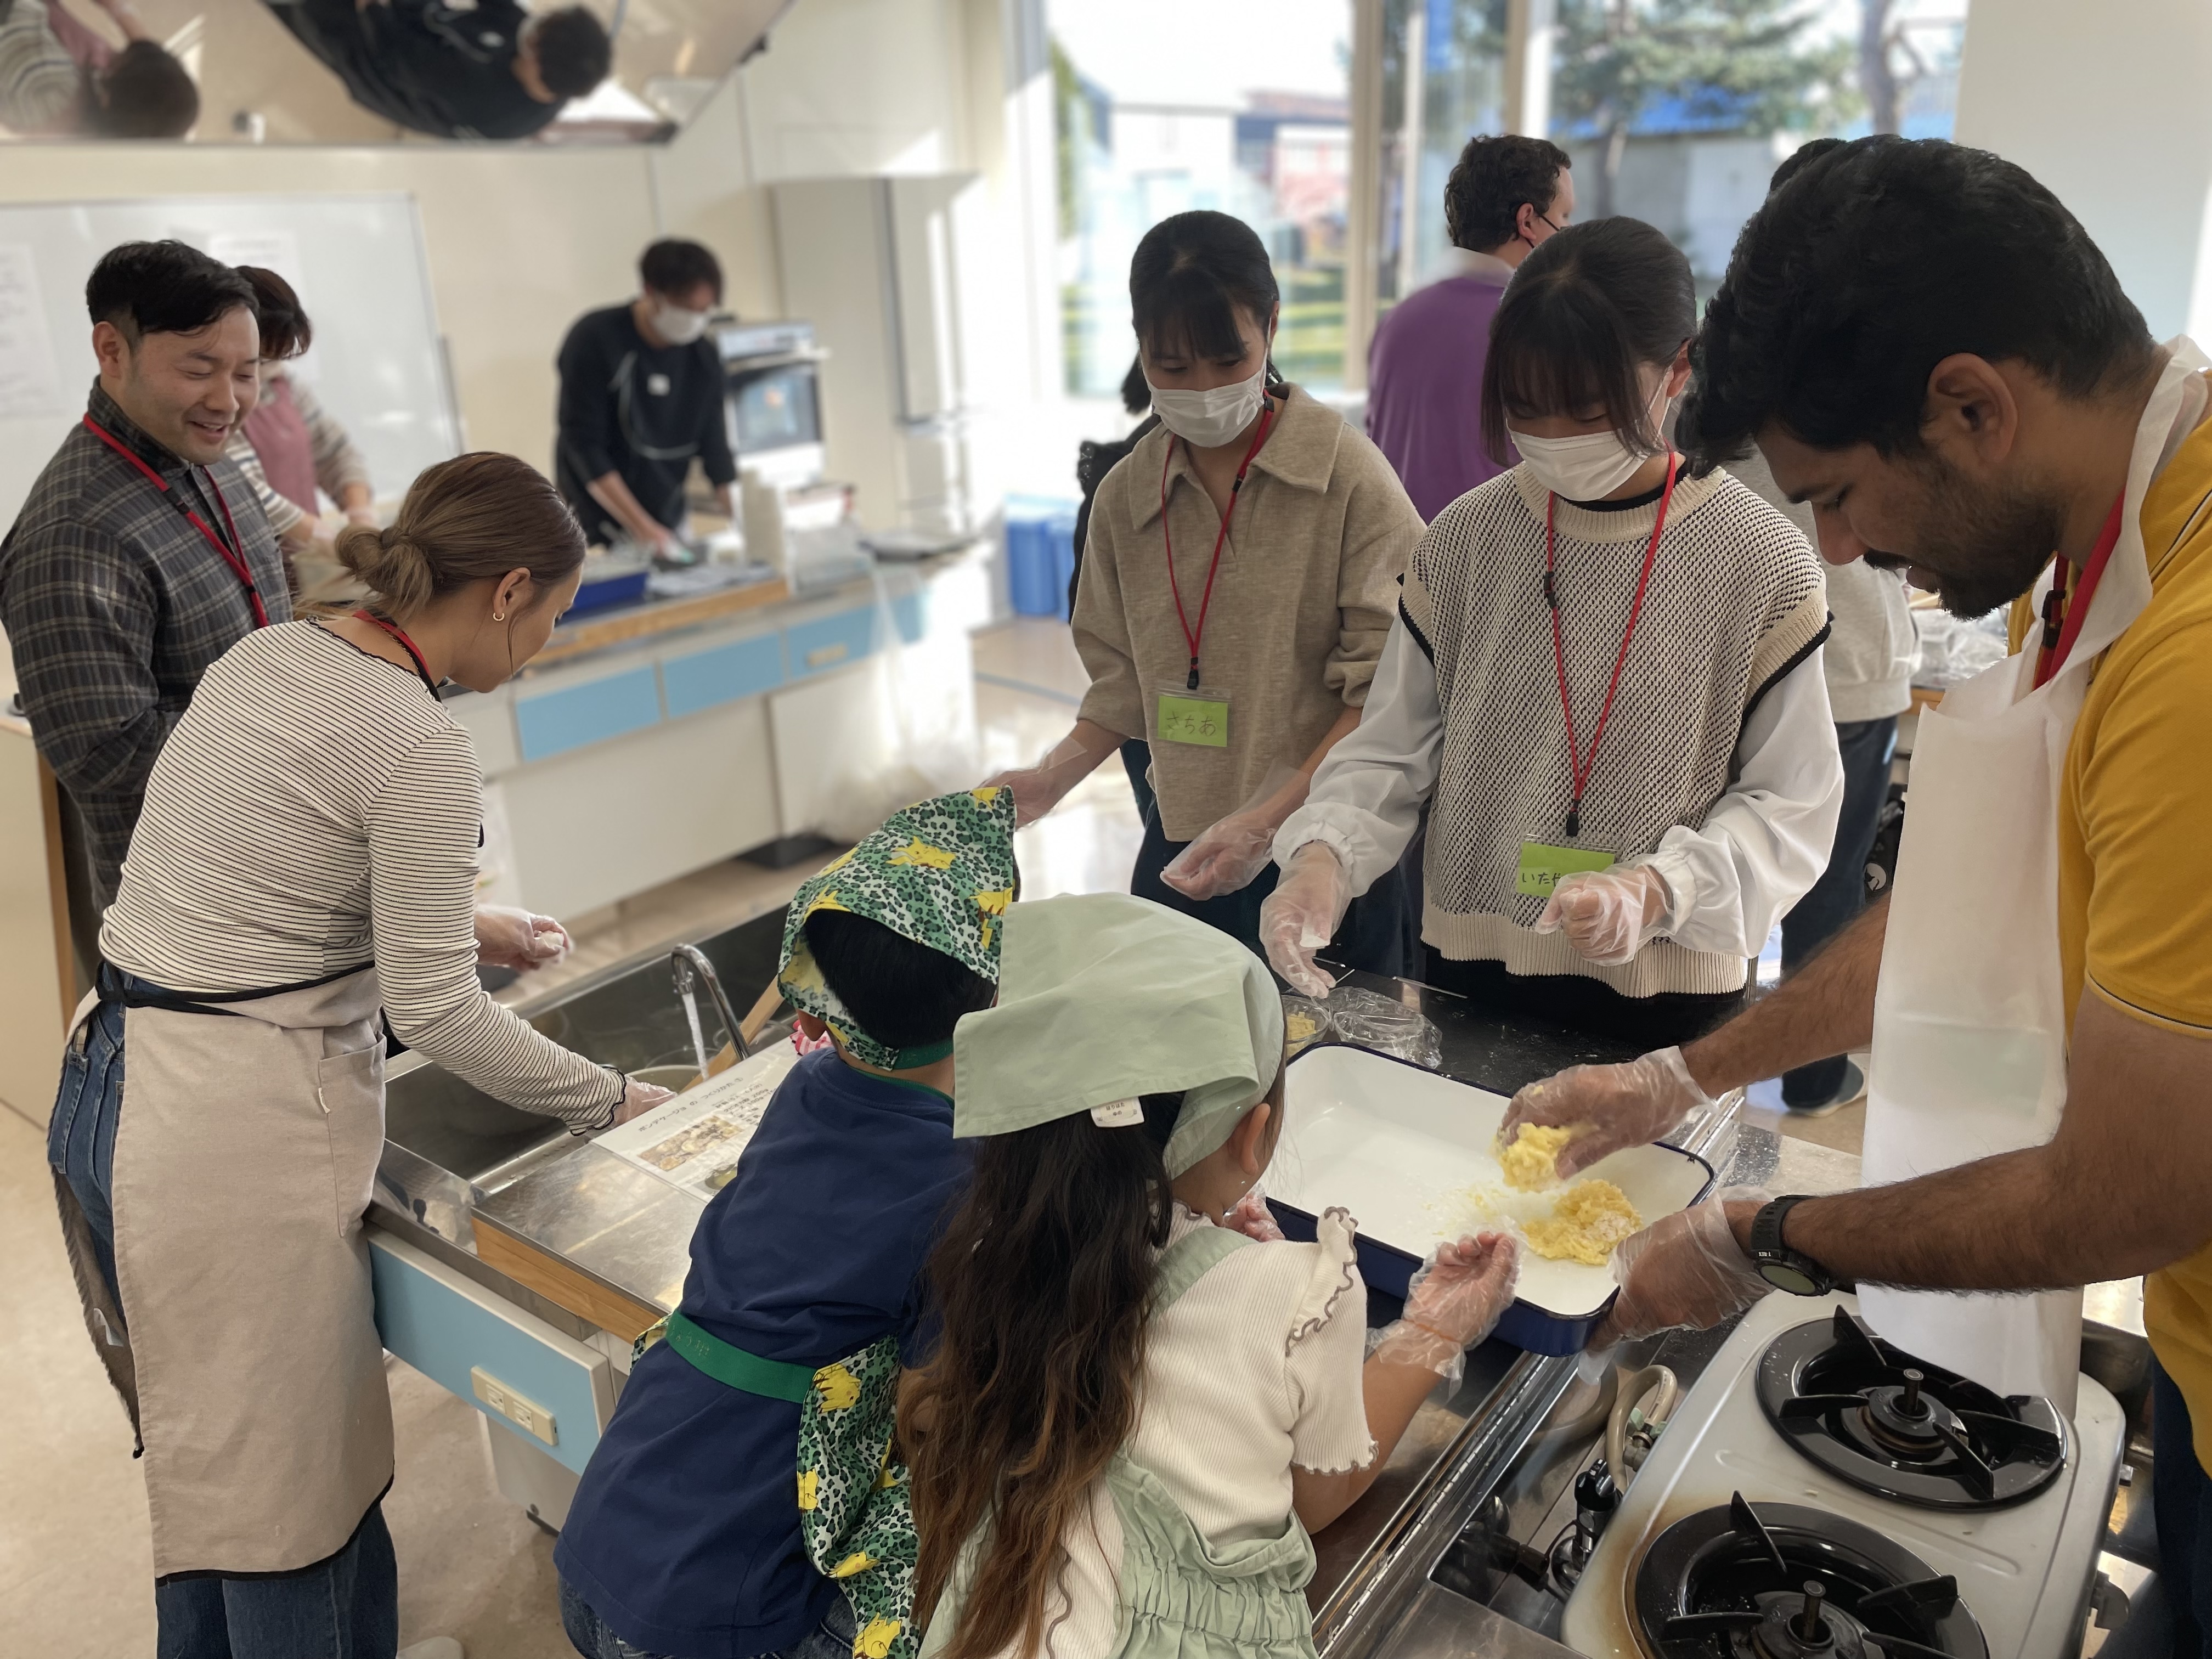 実習室では北見市のきたみ国際ふれあいカフェが実施され、日本人と外国人合わせて60名が交流しながらブラジルのパン“ポンデケージョ”を作りました